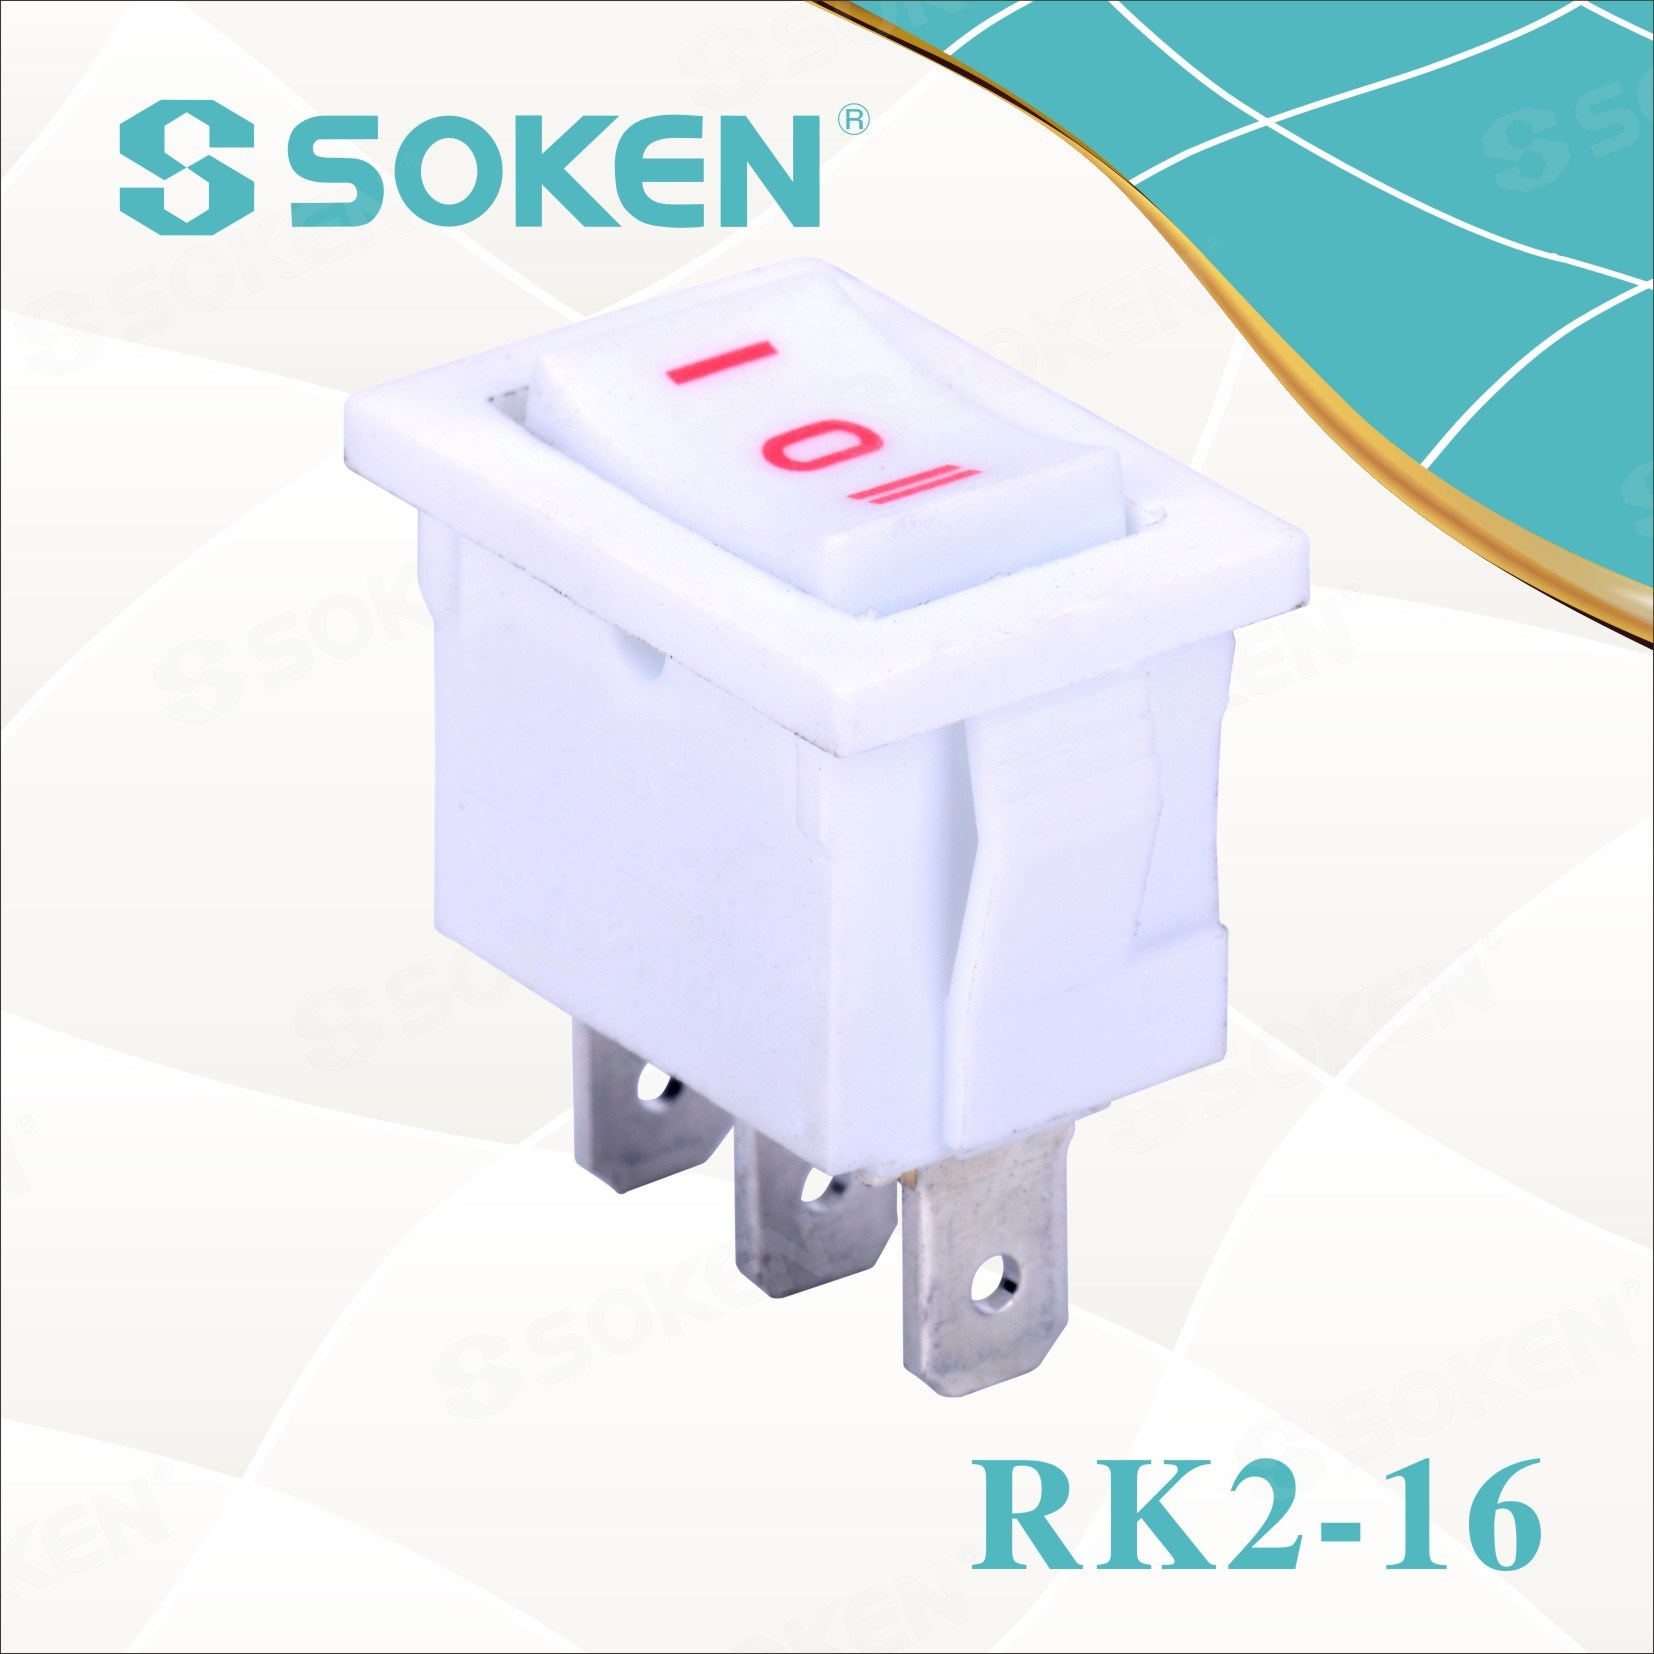 Sokne Rk2-16 1X3 on off on Rocker Switch